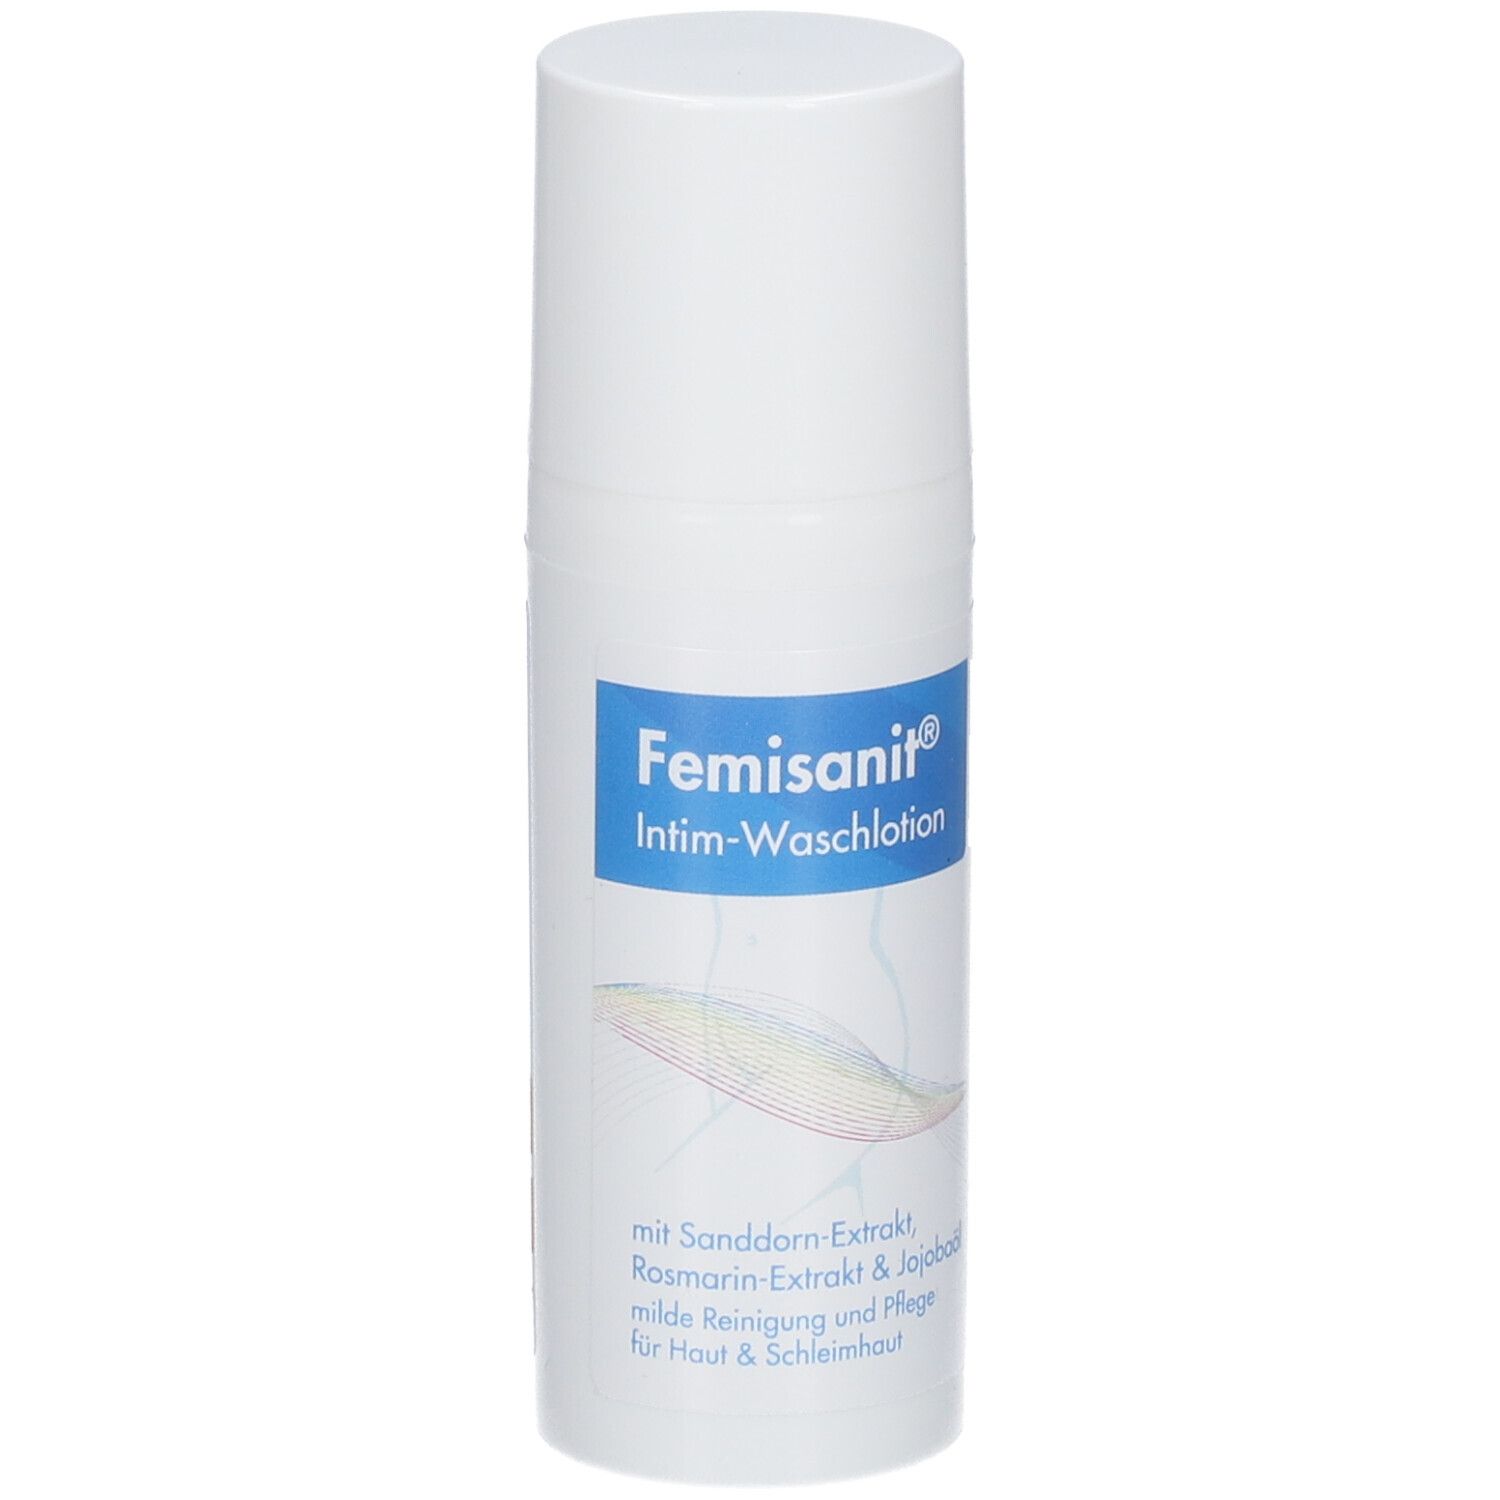 Femisanit® Intim-Waschlotion